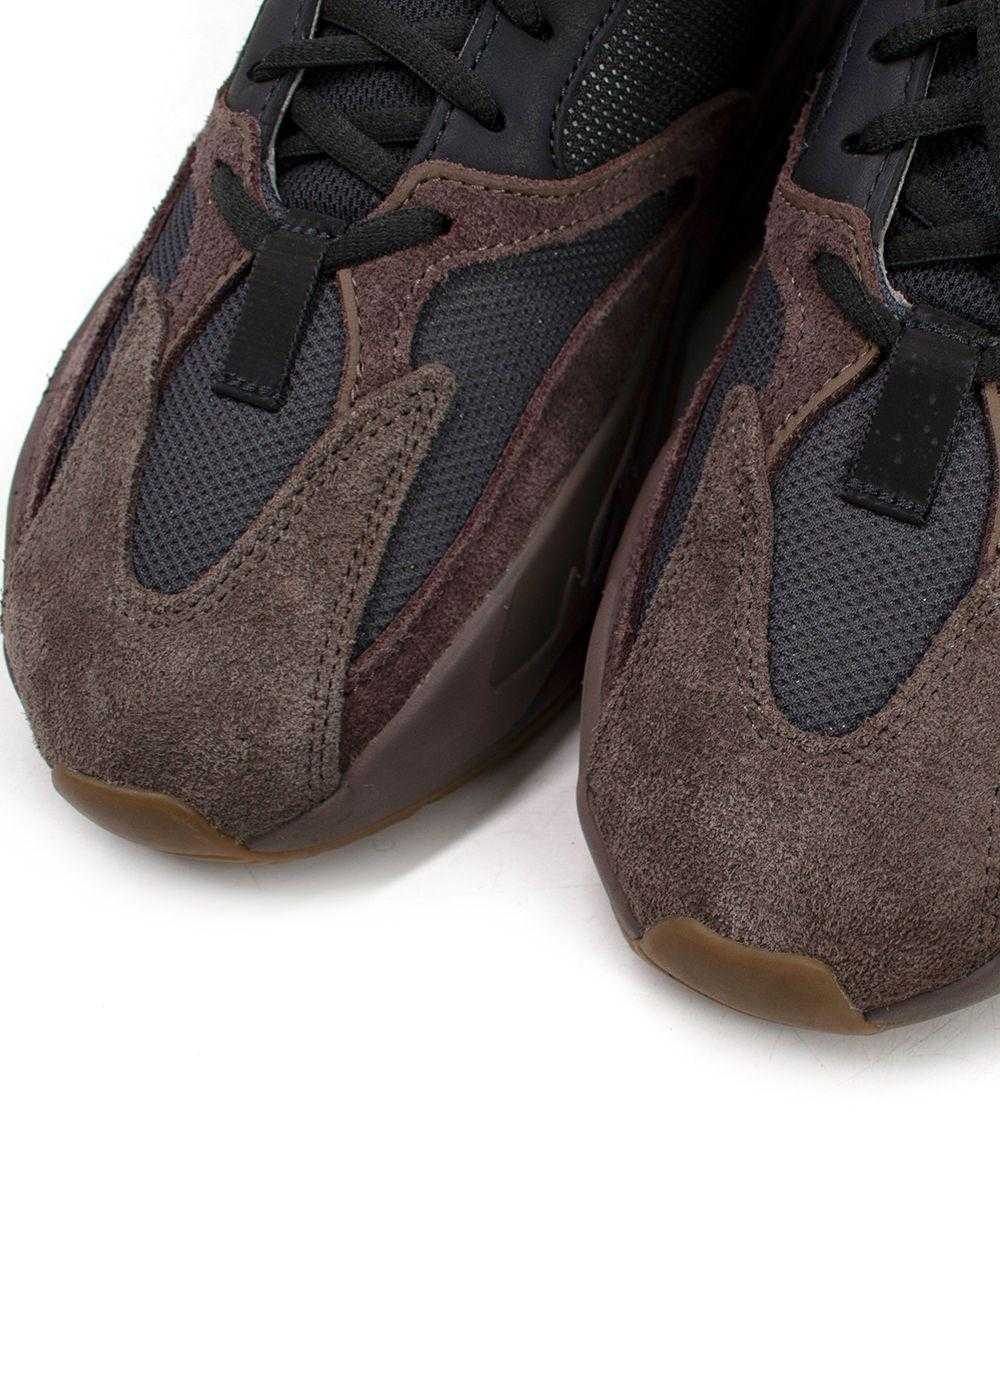 Yeezy x Adidas Yeezy Boost 700 Mauve Sneakers - image 5